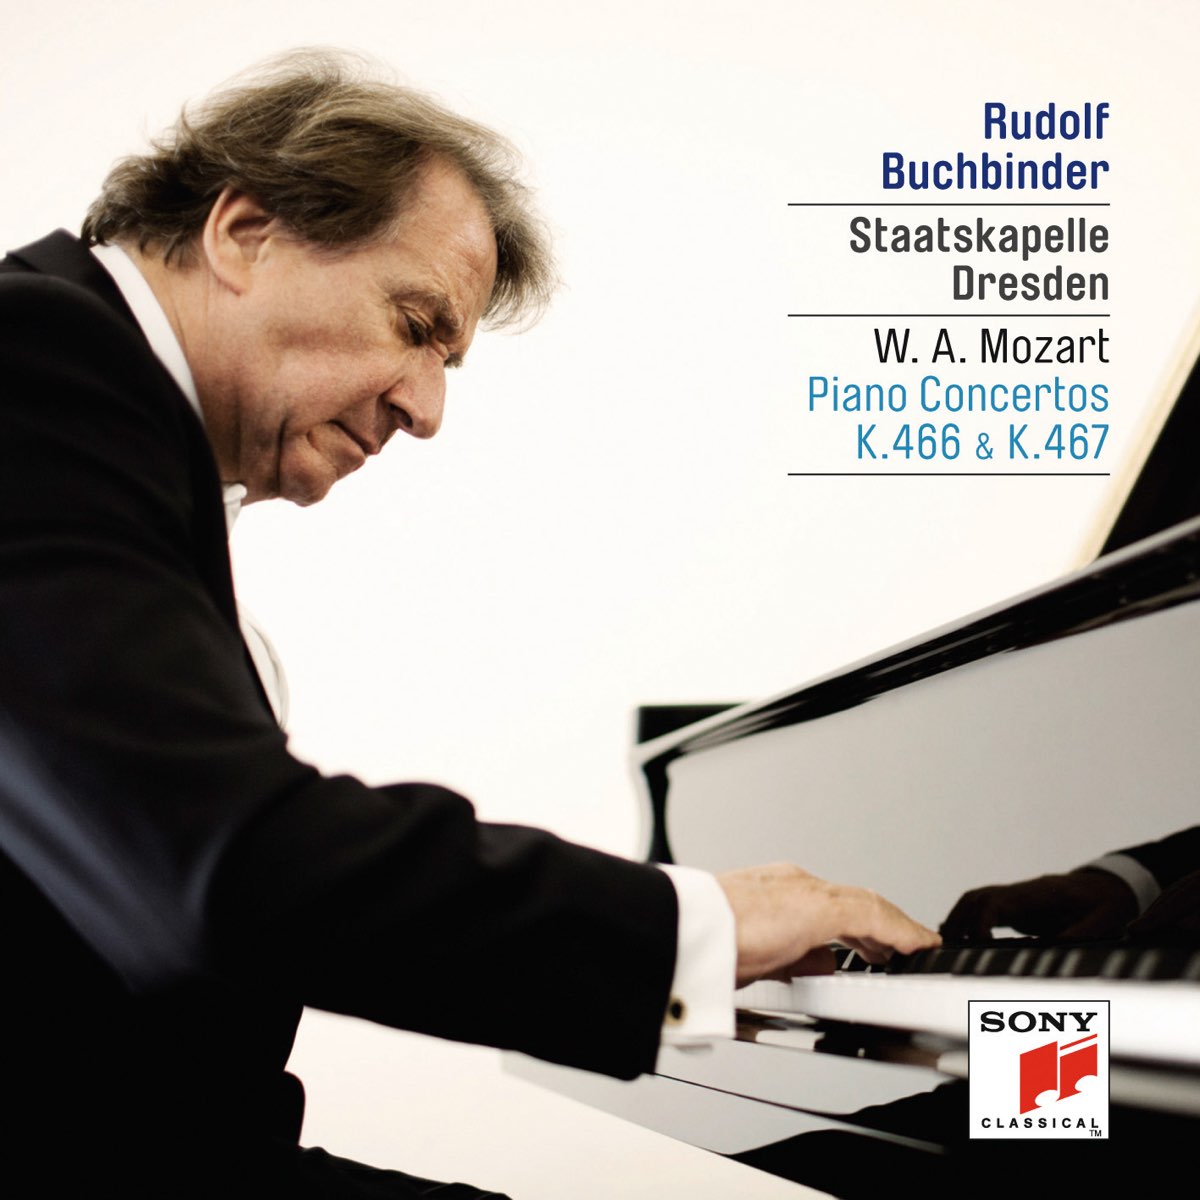 Mozart: Piano Concertos, K. 466 & 467“ von Rudolf Buchbinder bei Apple Music